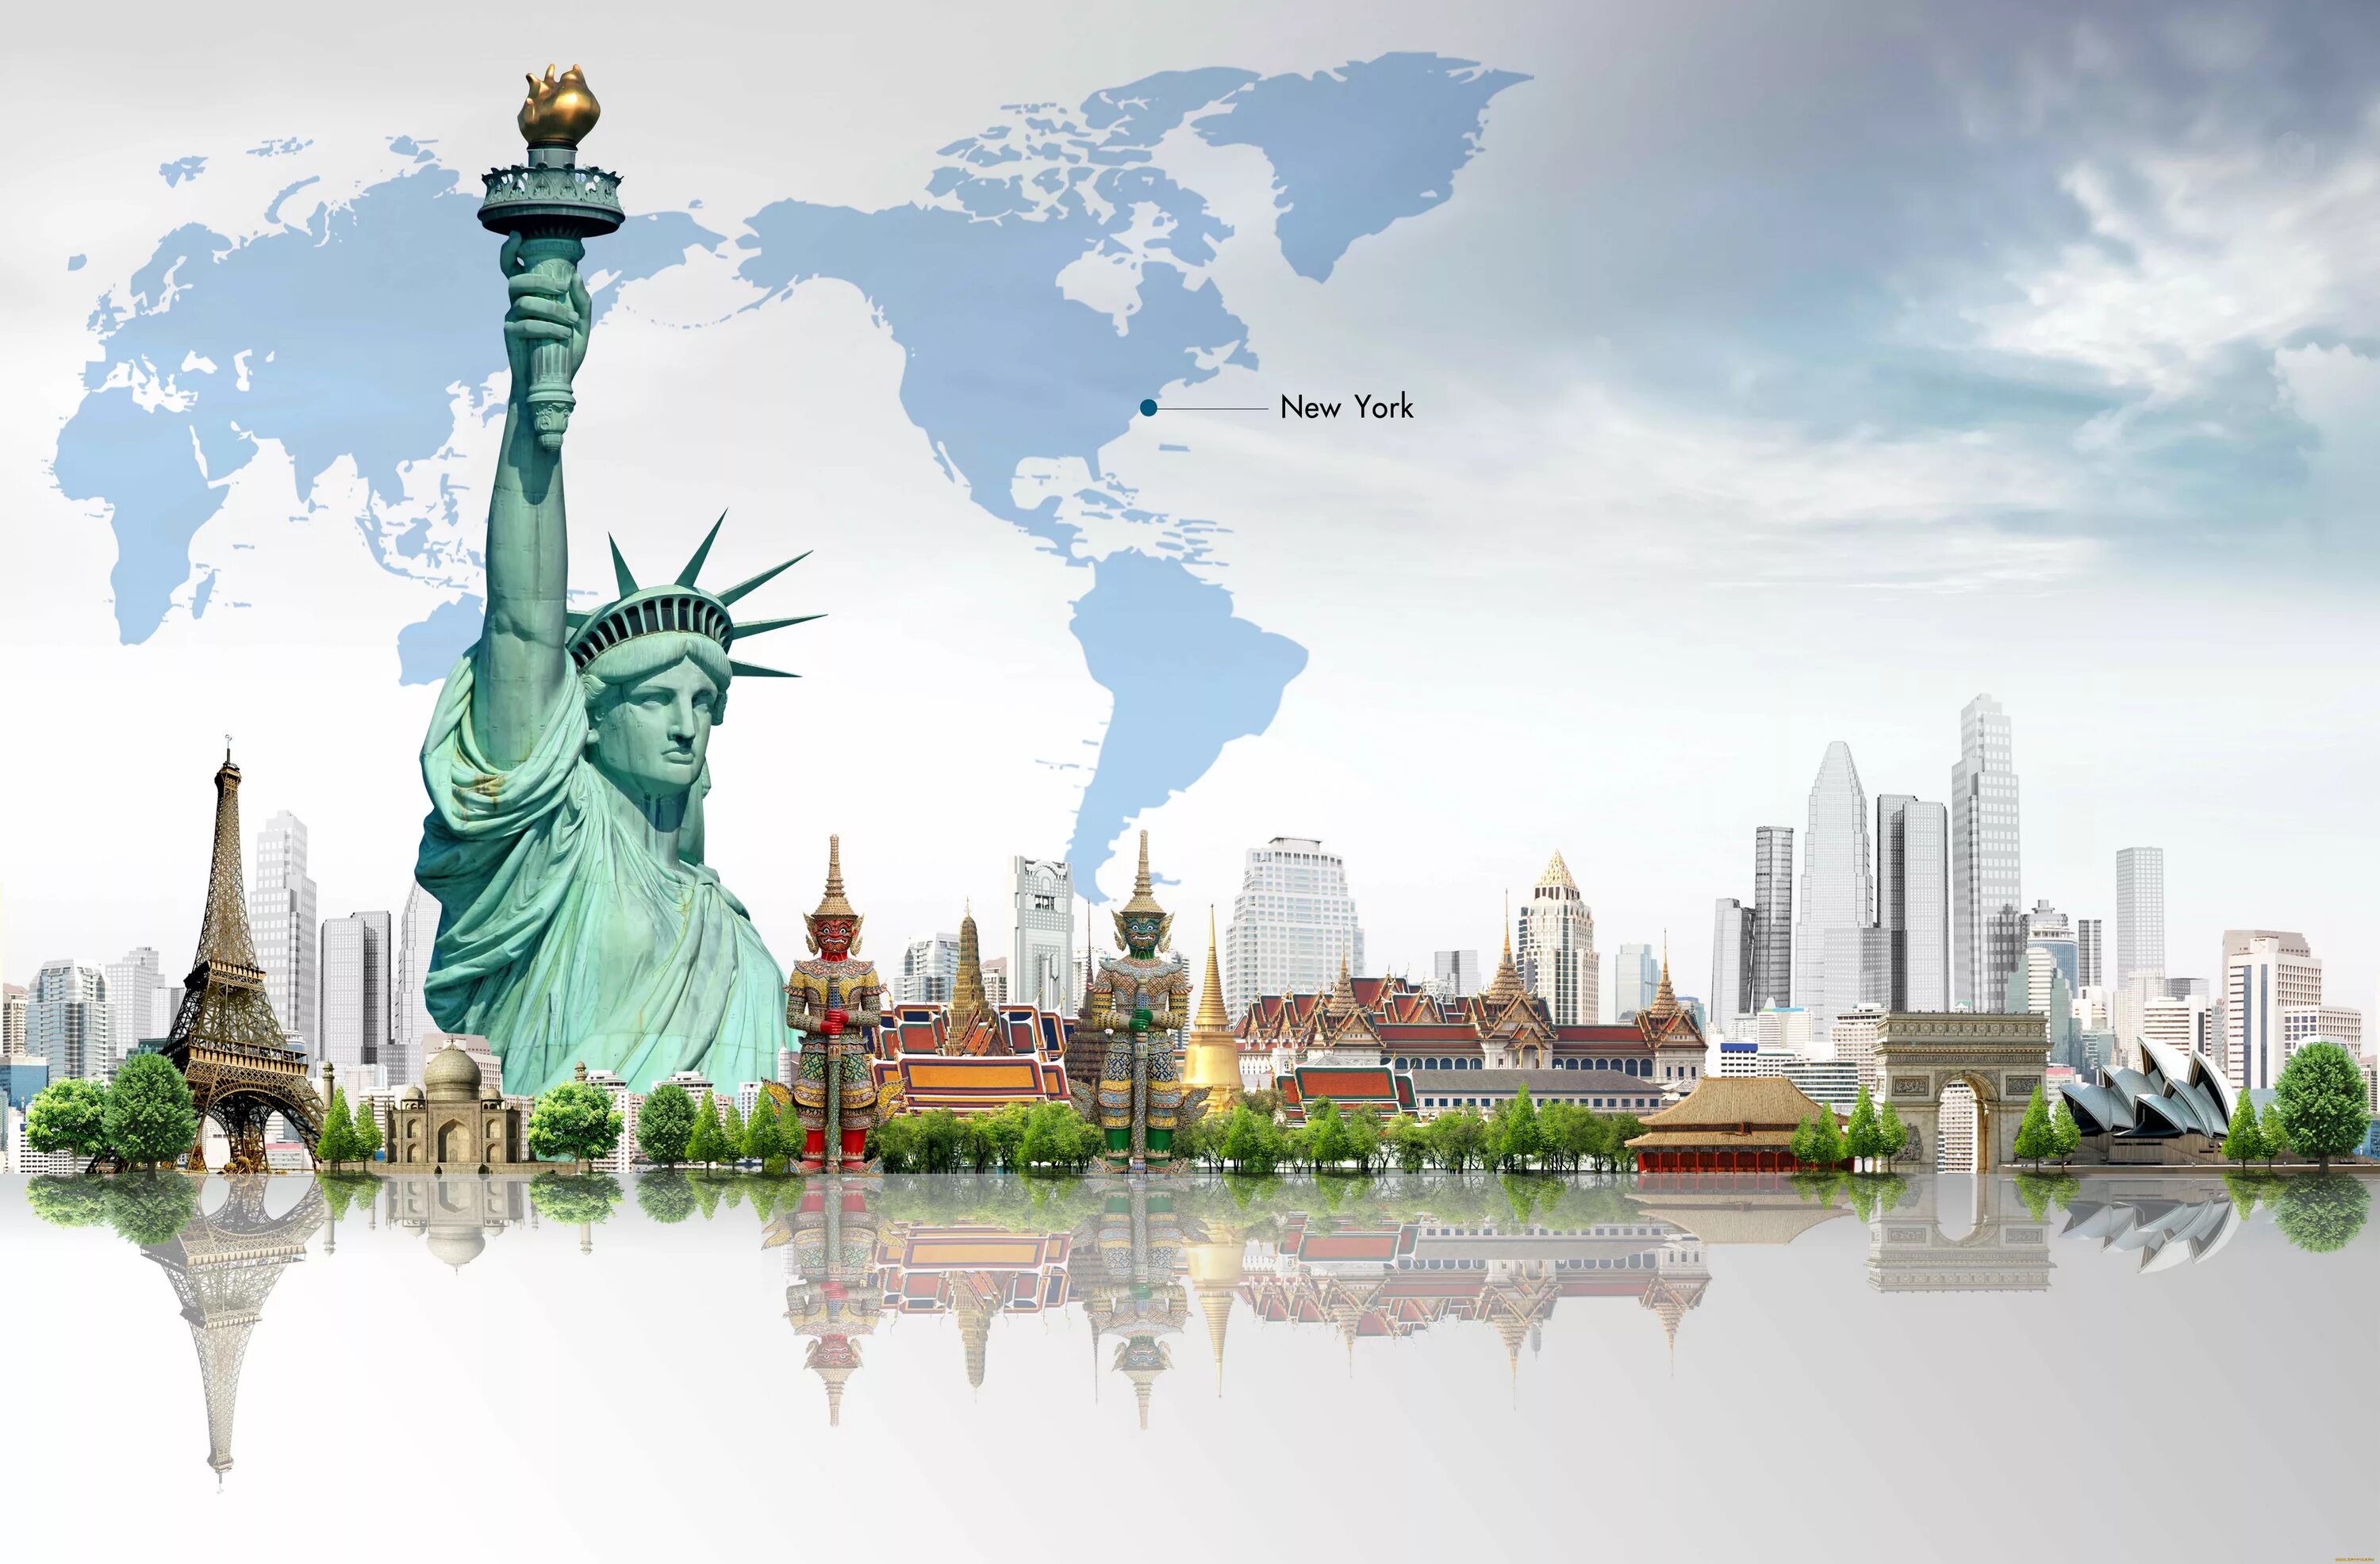 World famous places. Статуя свободы Нью-Йорк. Статуя свободы Нью-Йорк путешествие. Статуя свободы на фоне Нью-Йорка. Достопримечательности Нью Йорка статуя свободы.